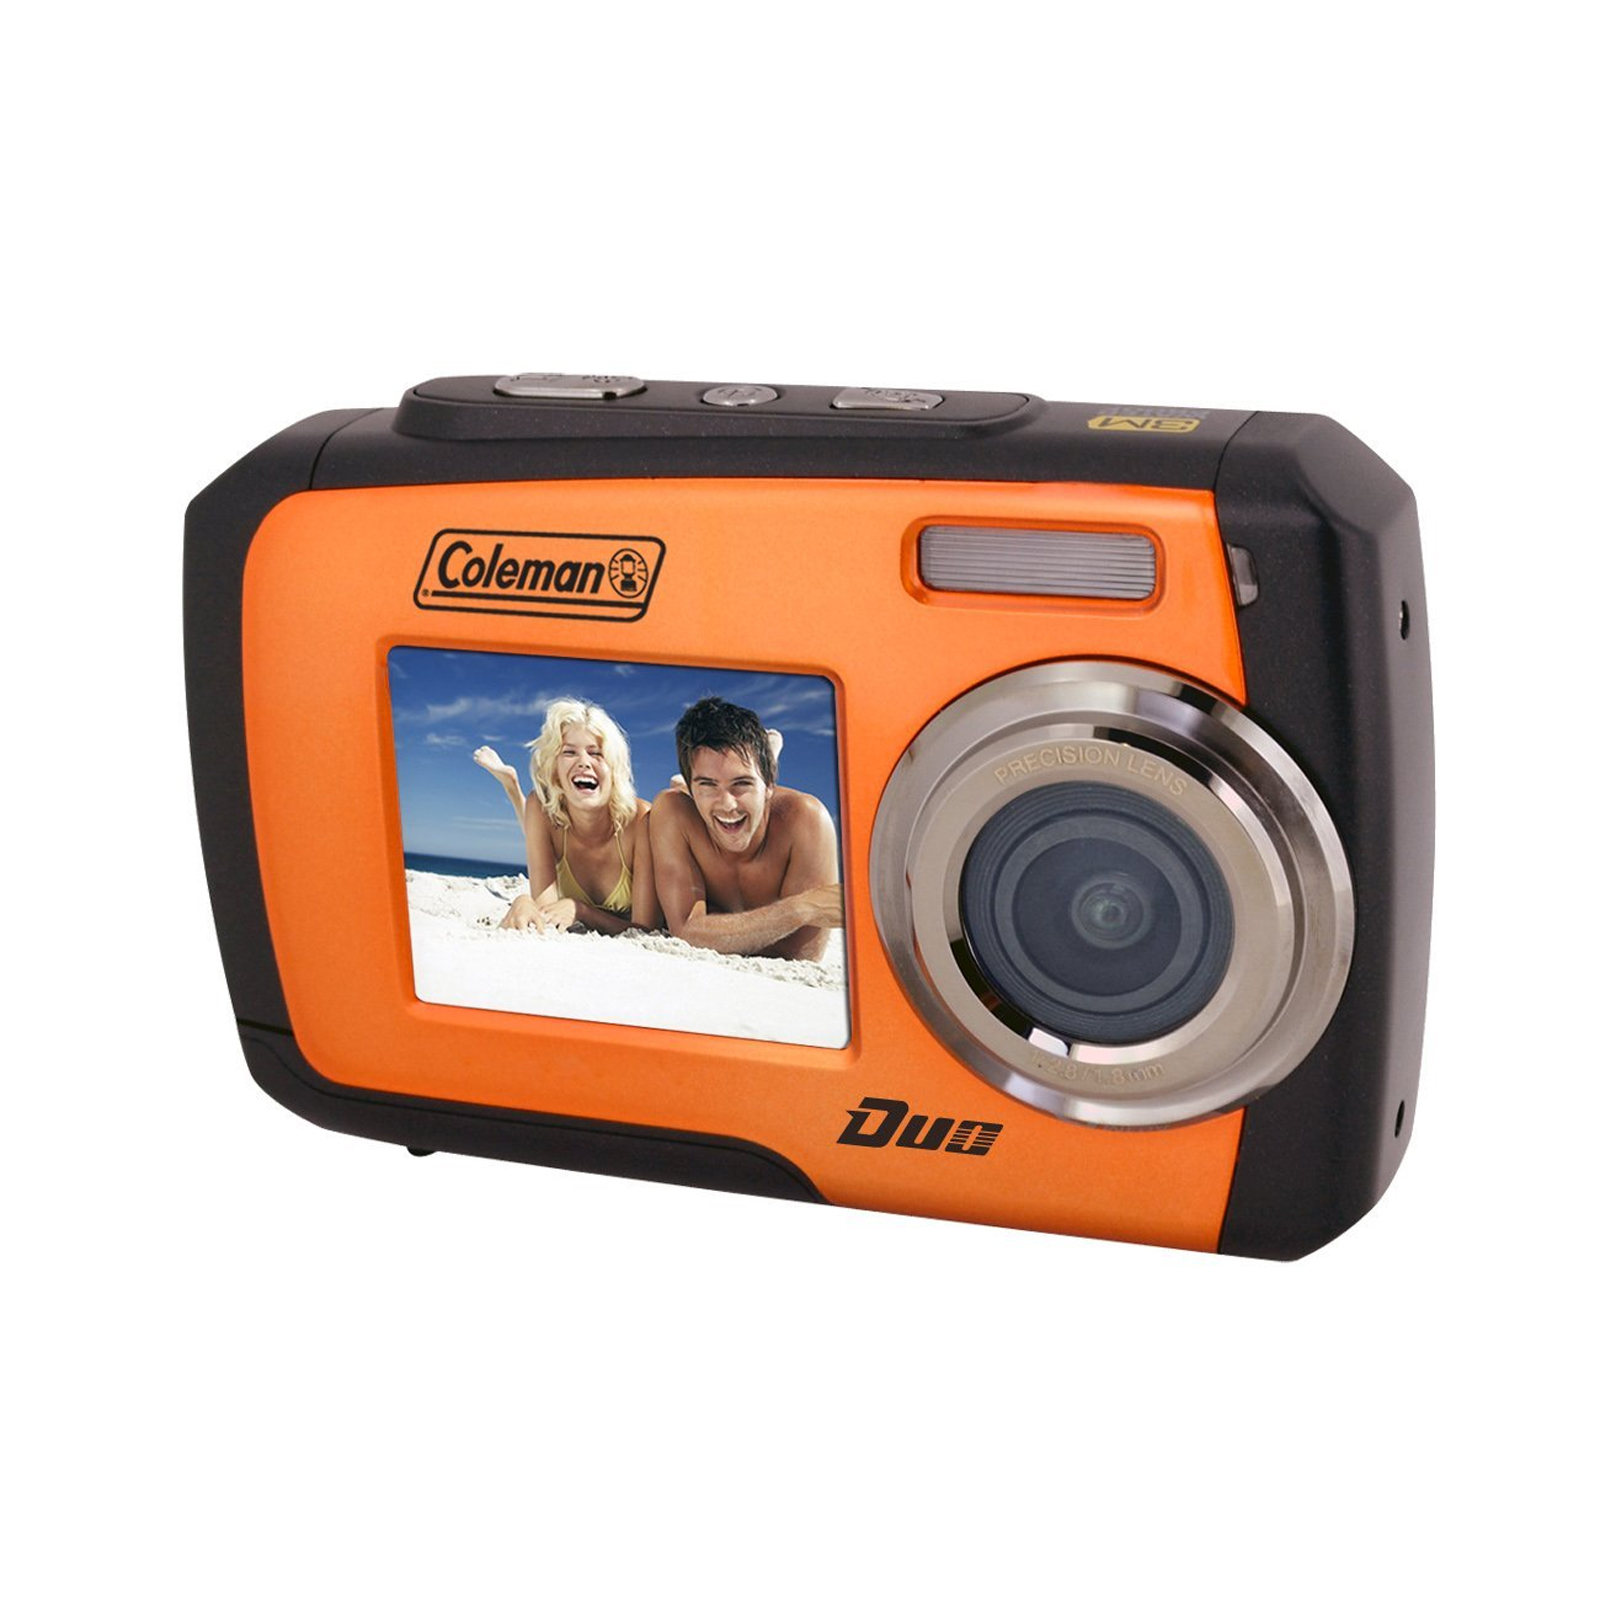 Coleman Duo 14 Megapixel Waterproof Digital Camera with Dual LCD Screen (Orange)